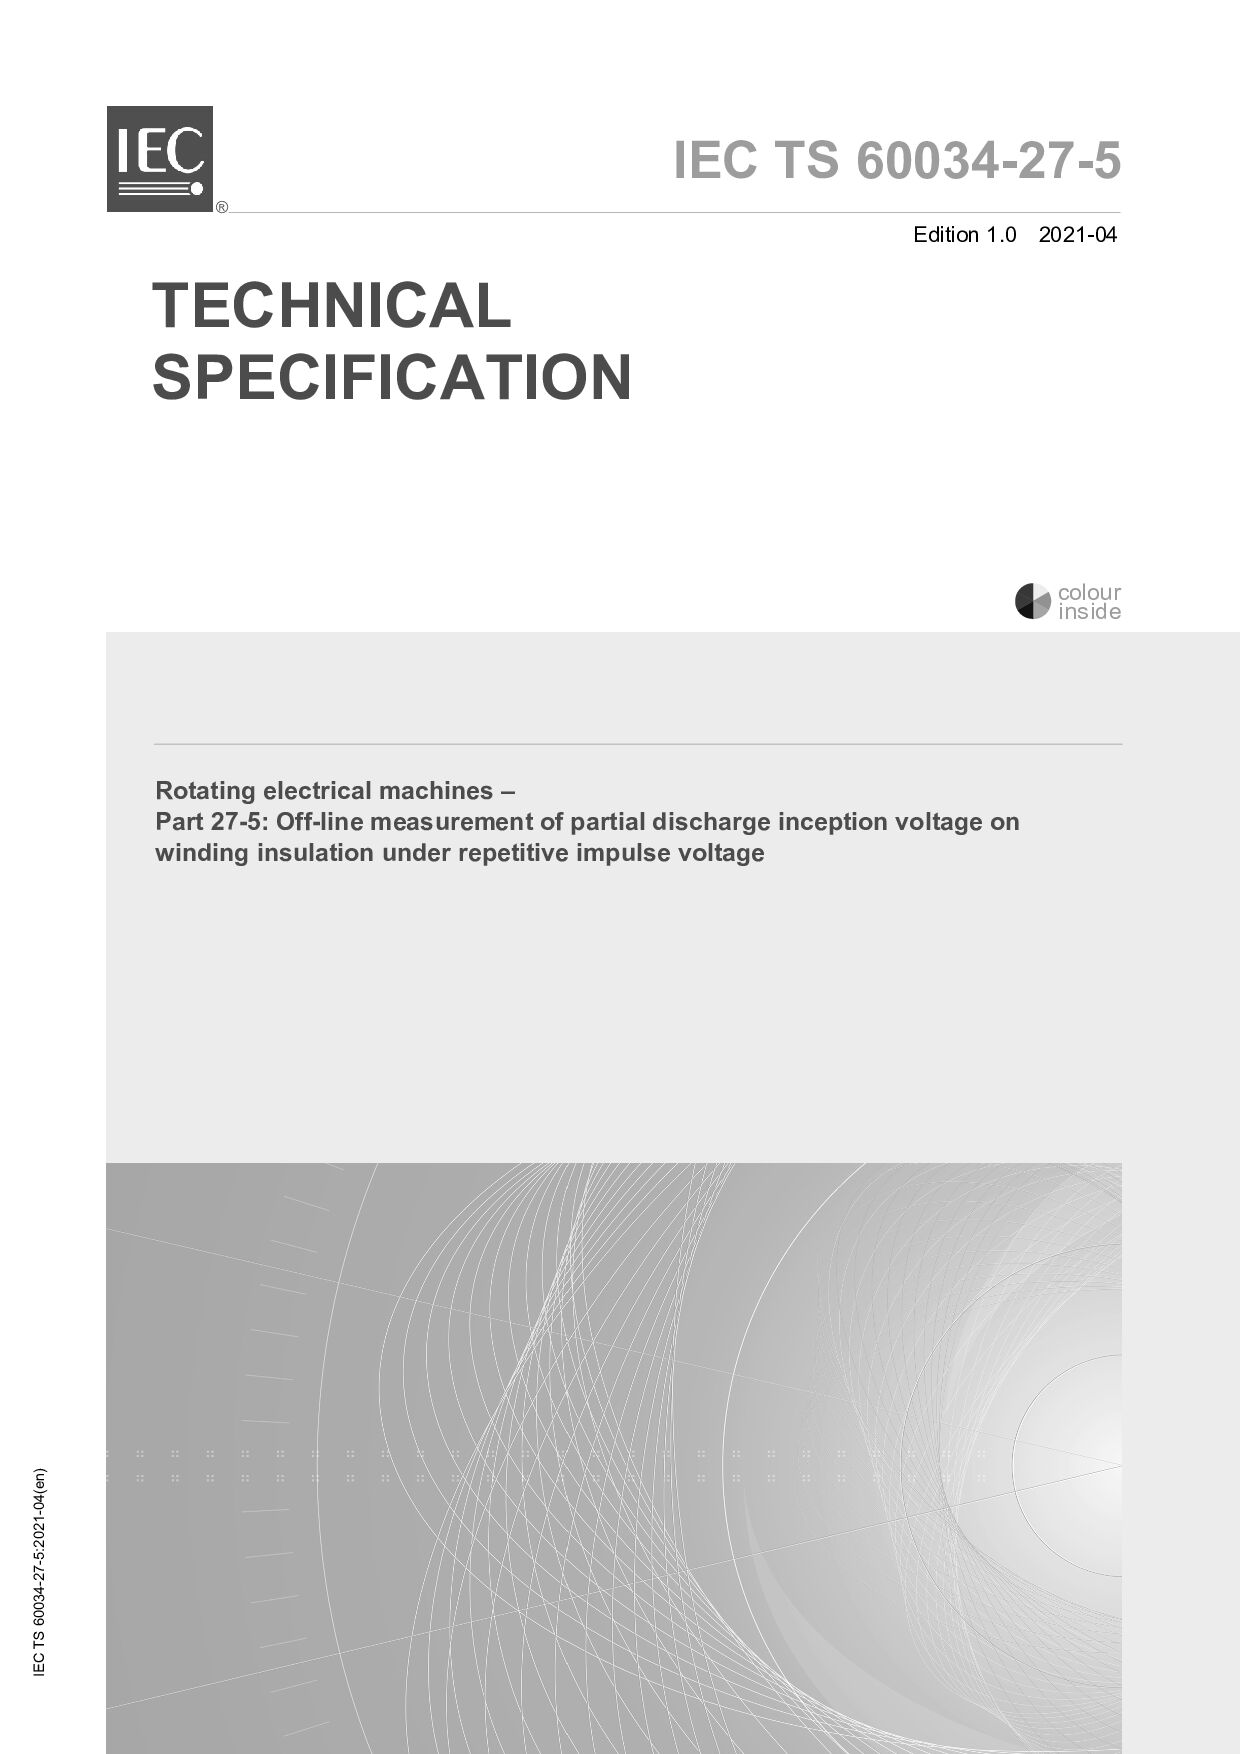 IEC TS 60034-27-5:2021